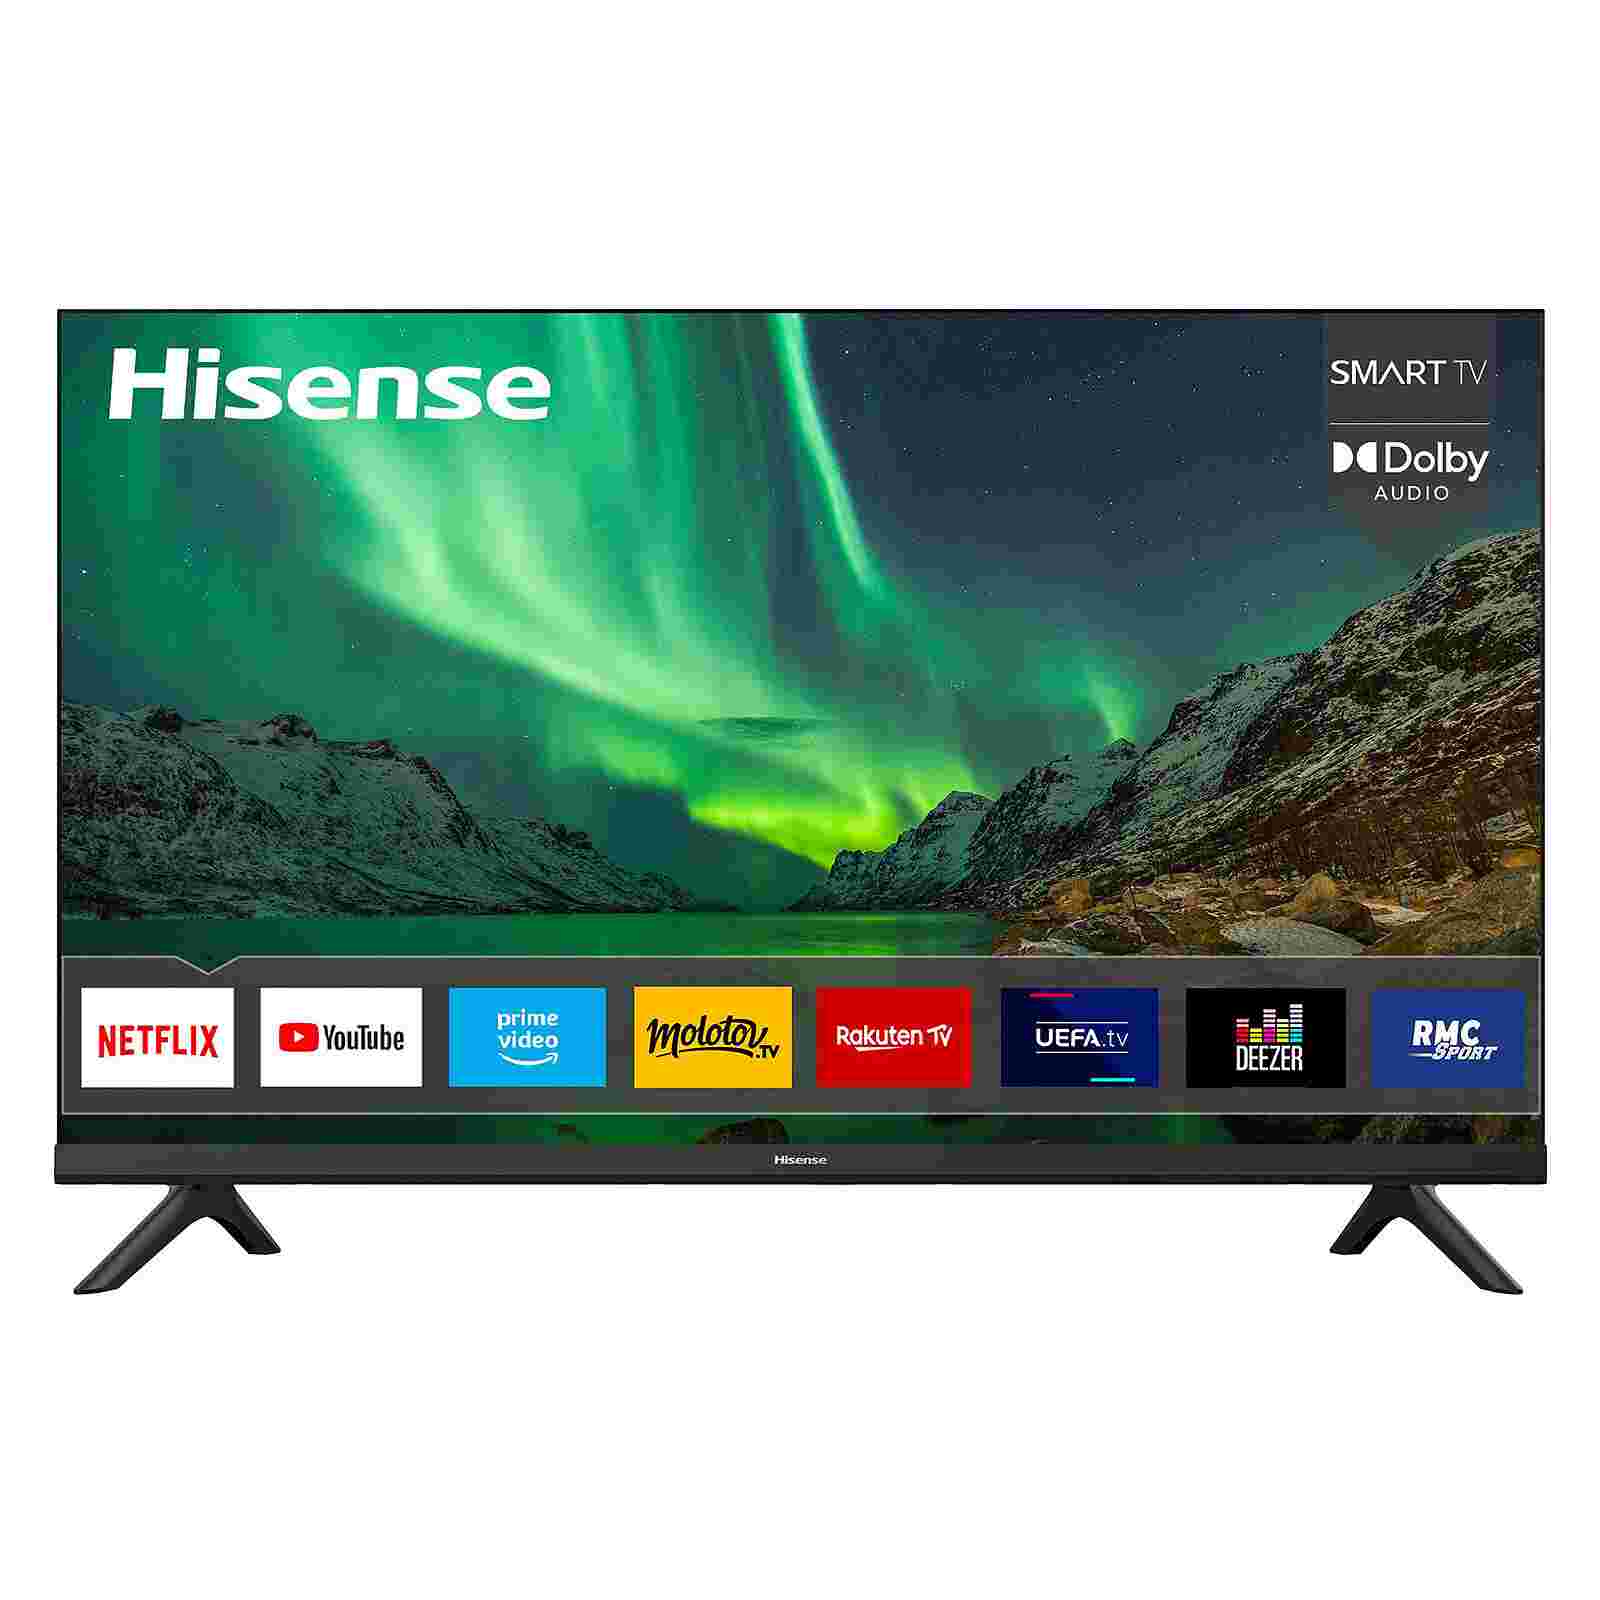 Smart TV - Hisense - 40 pouces - 6 mois de garantie